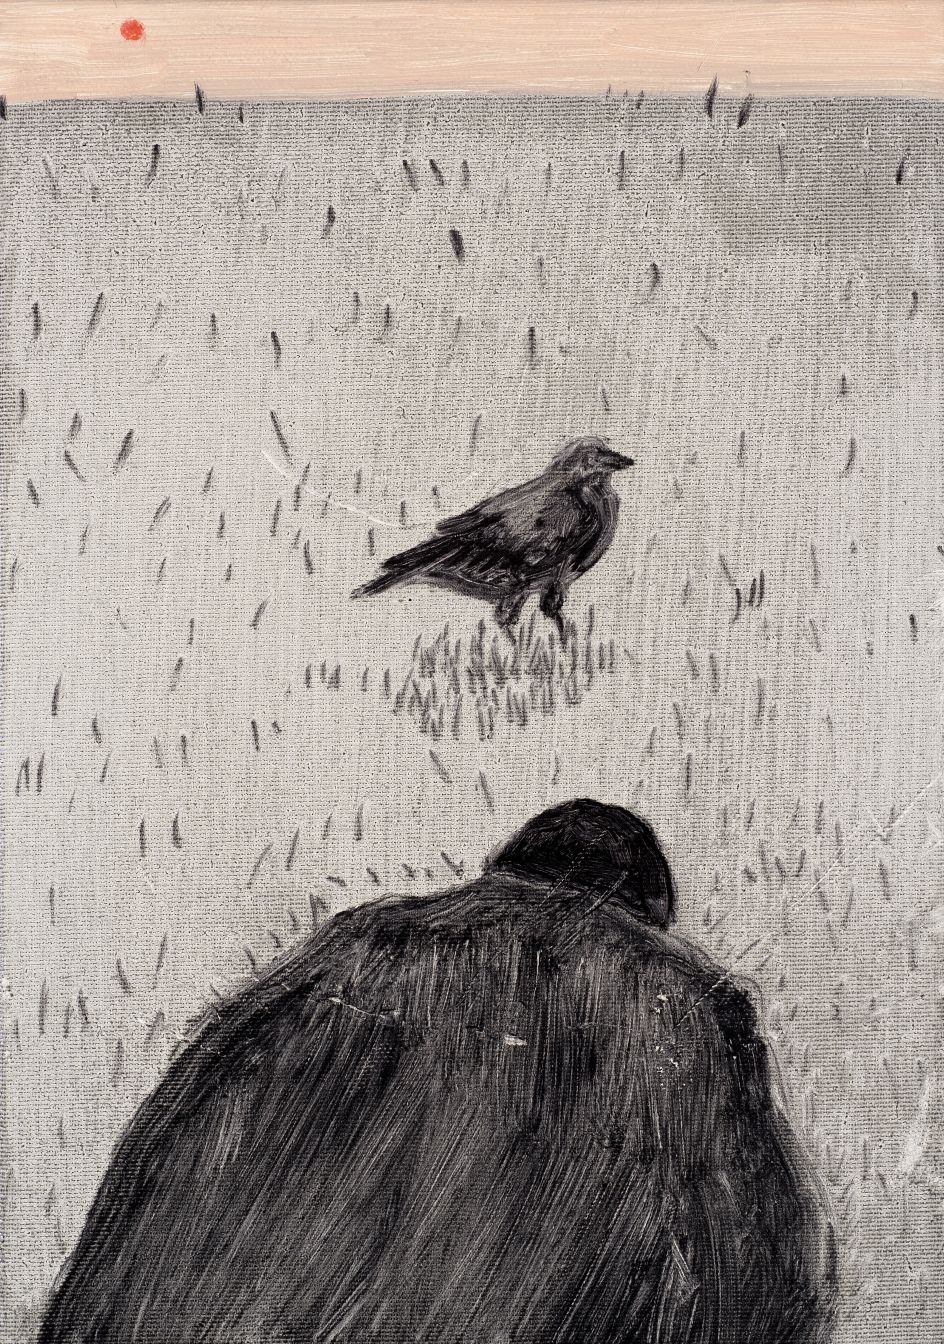 Raven, 2018, oil on canvas, 35 x 25 cm